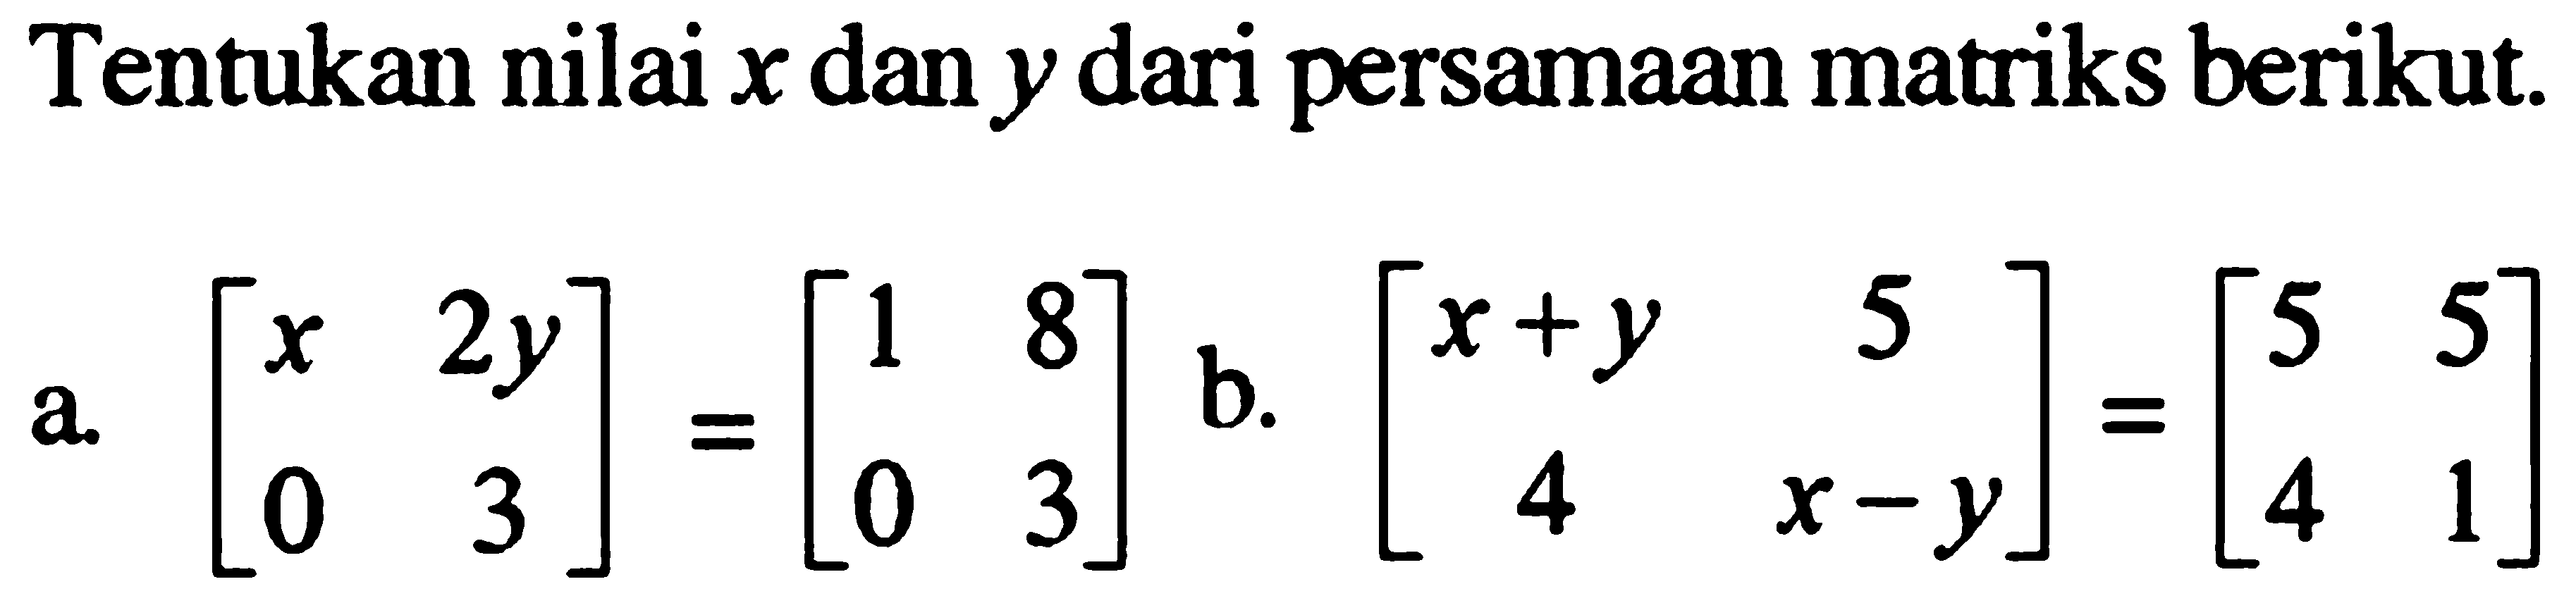 Tentukan nilai x dan y dari persamaan matriks berikut. a. [x 2y 0 3]=[1 8 0 3] b. [x+y 5 4 x-y]=[5 5 4 1]